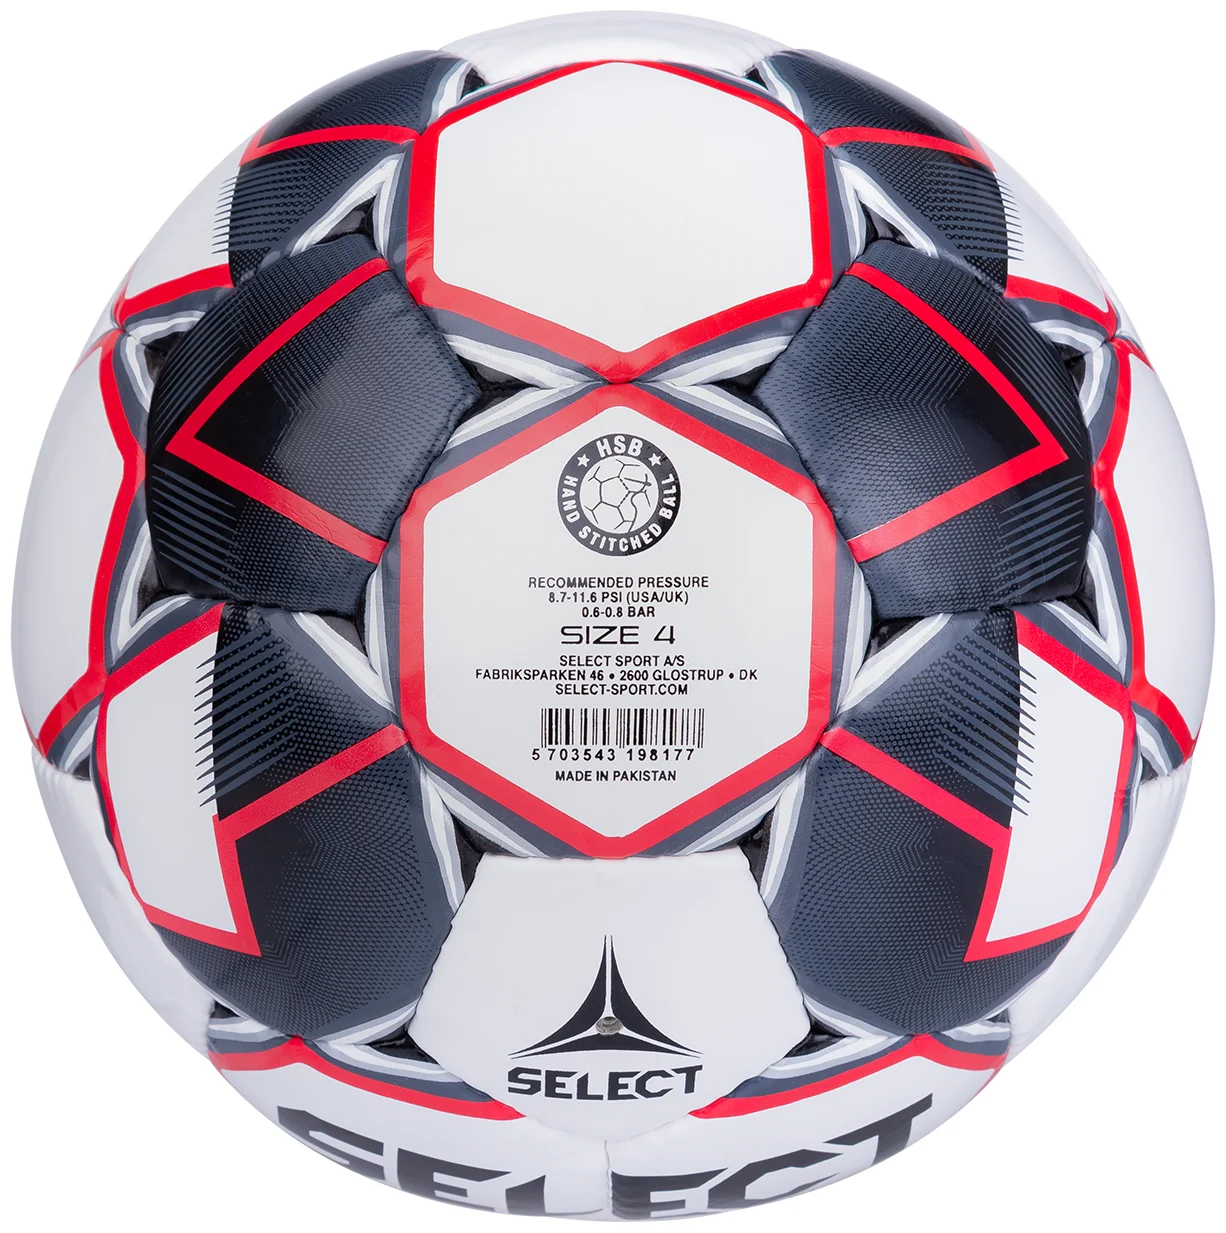 Фото Мяч футбольный Select Contra FIFA №4 белый/т.синий/красный со склада магазина СпортЕВ